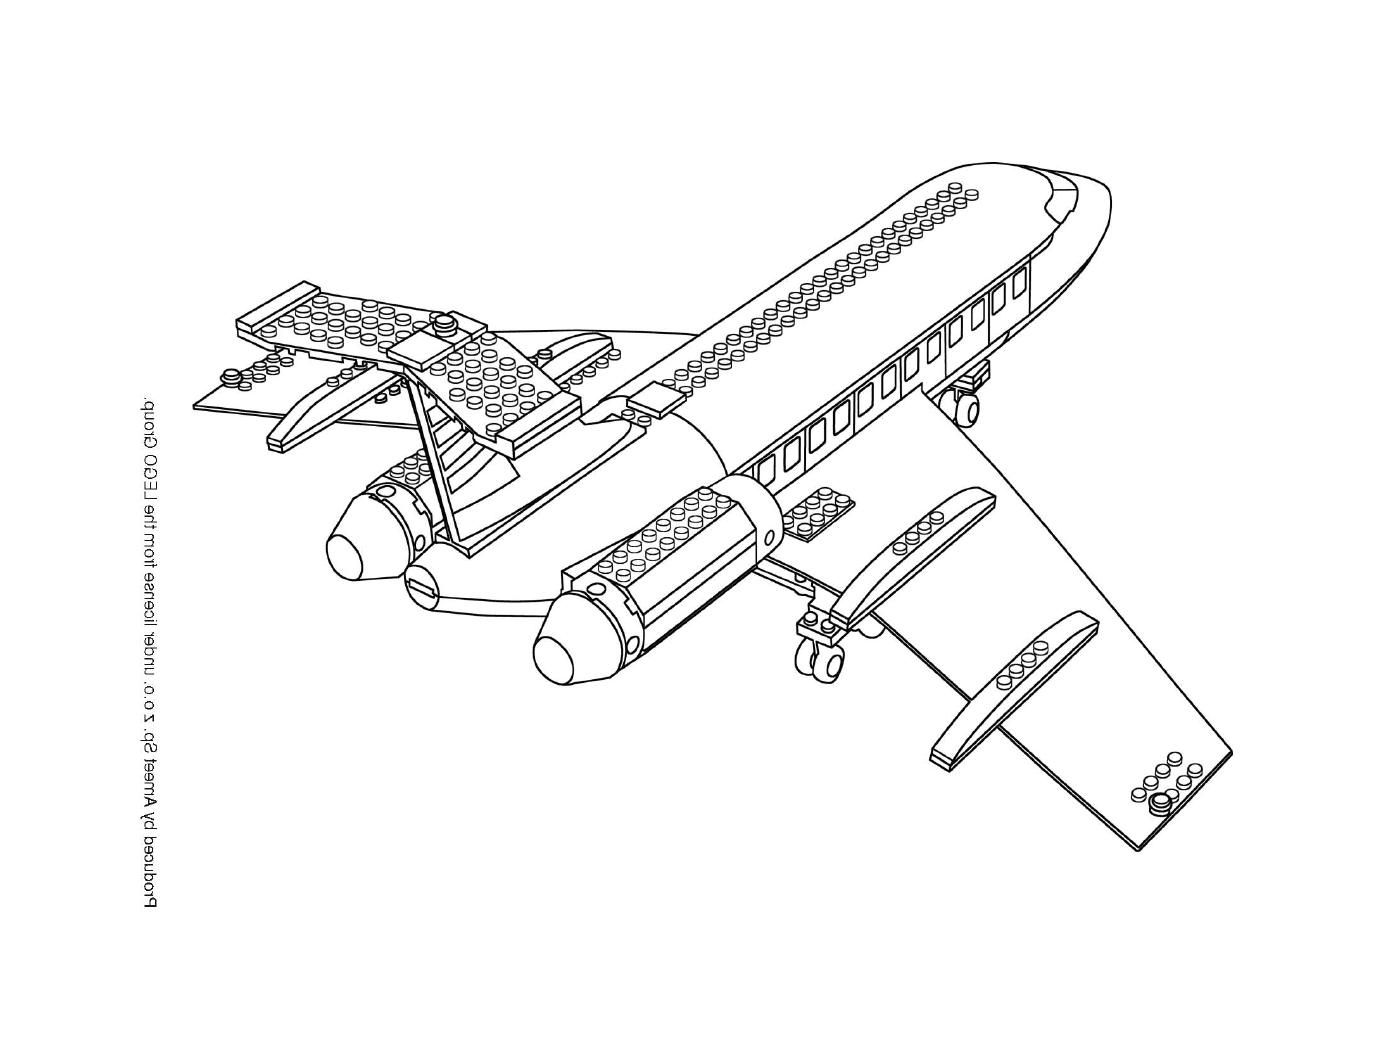   Un avion en dessin 